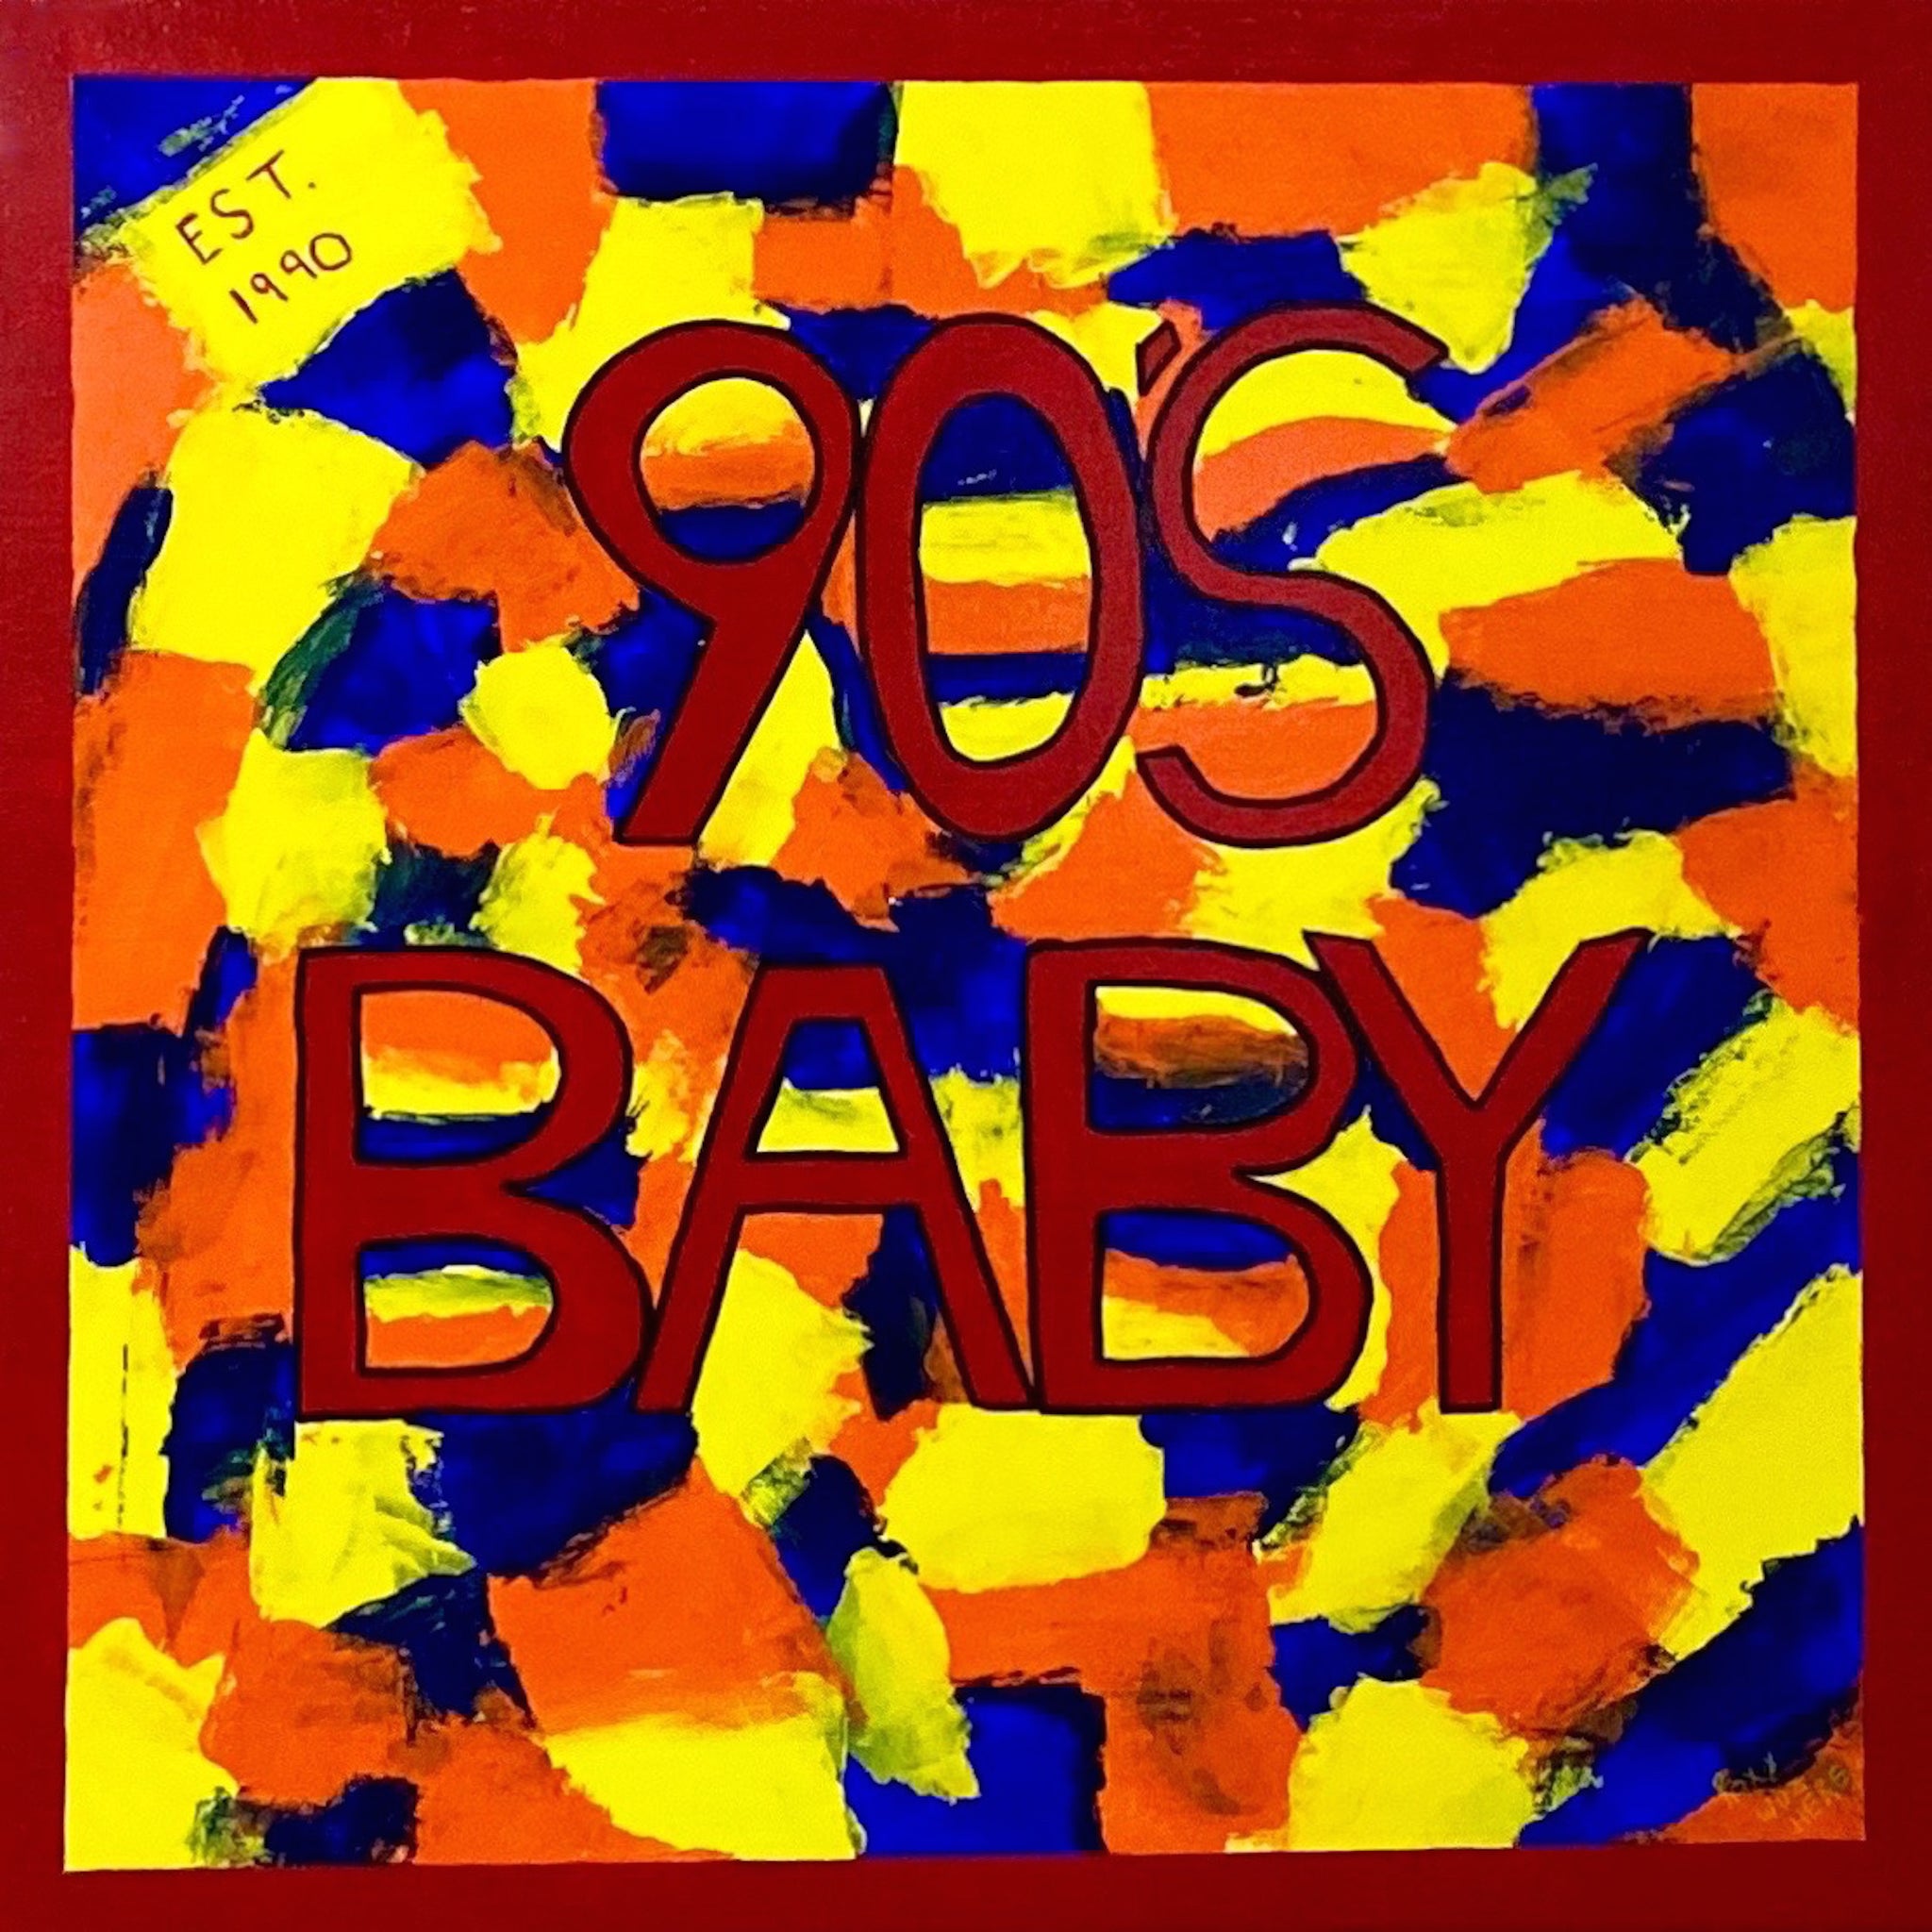 "90's Baby"